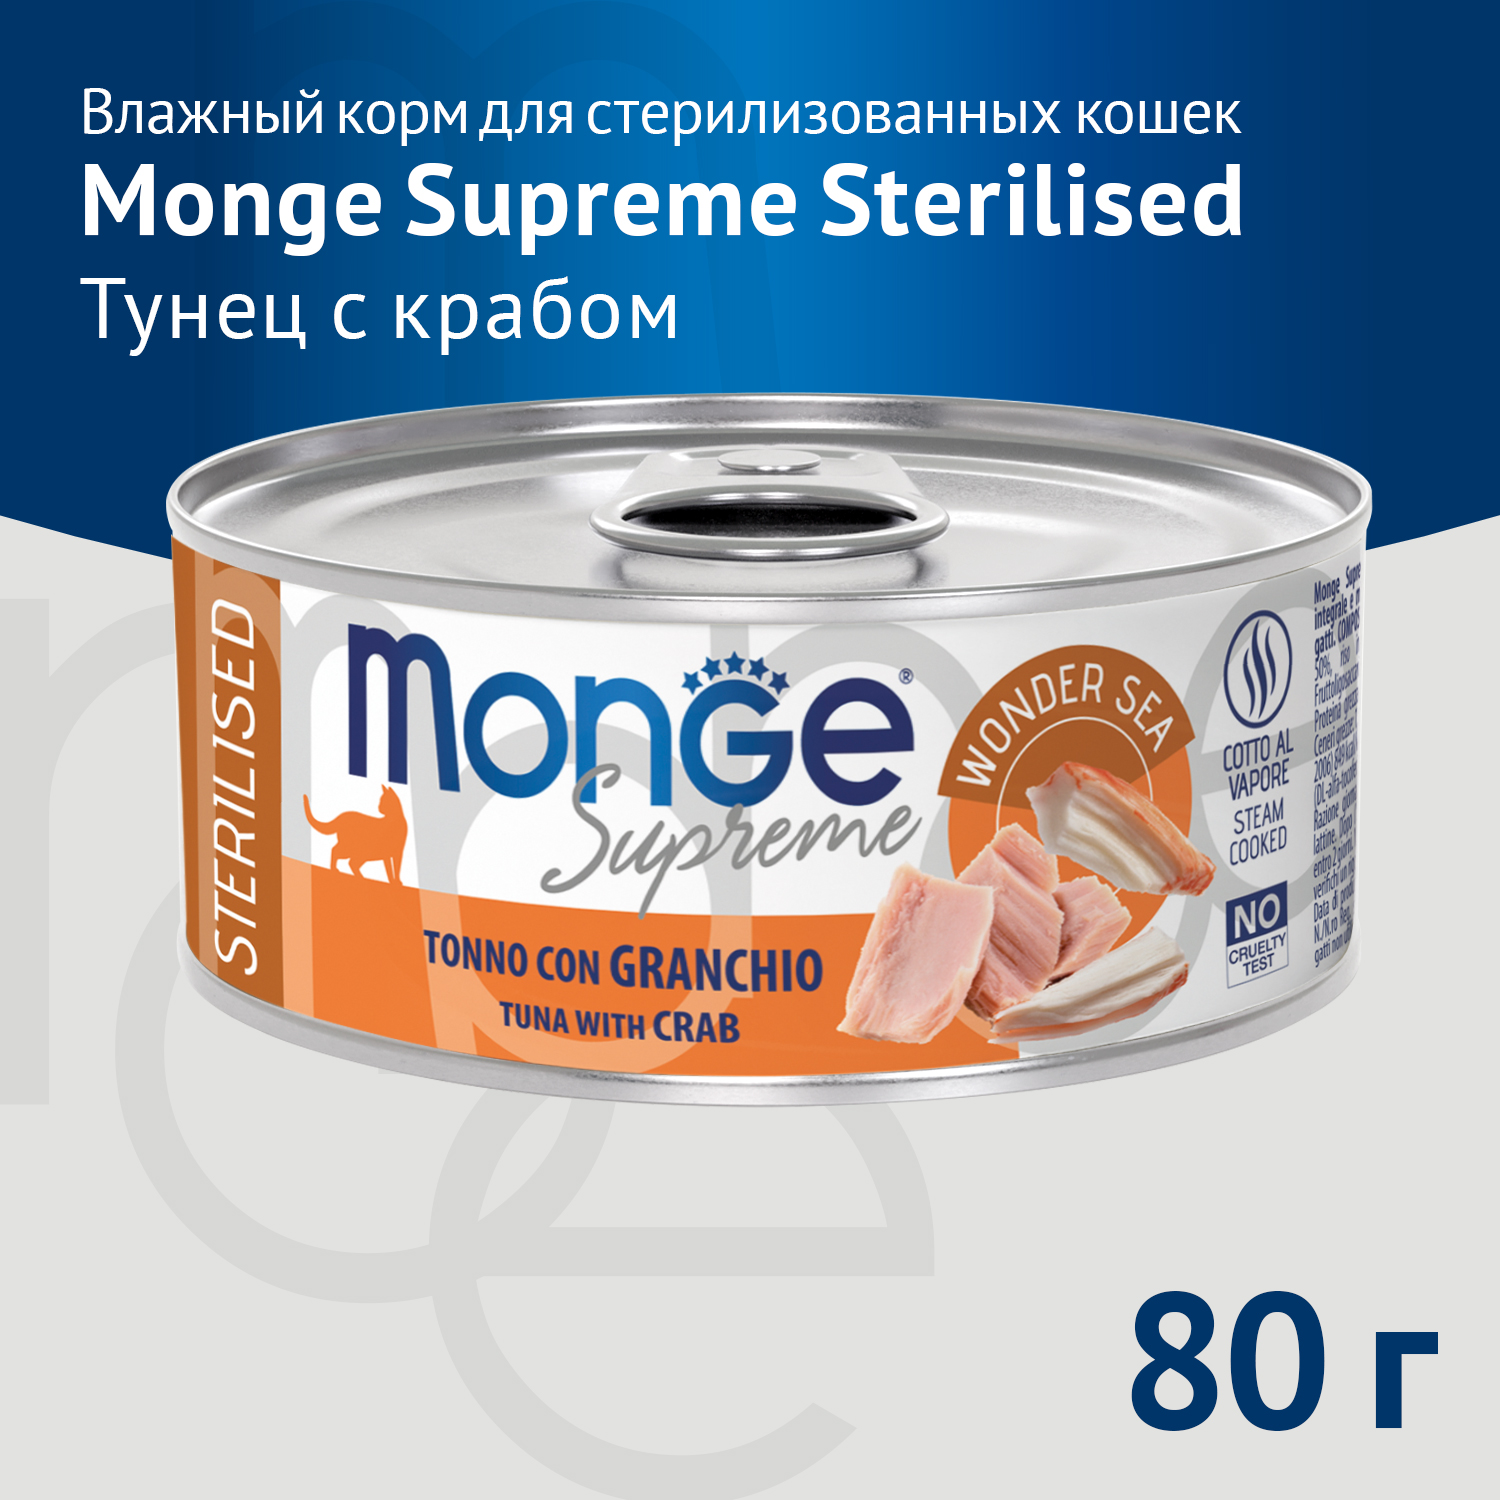 Влажный корм Monge Supreme sterilized для стерилизованных кошек из тунца с крабом, консервы 80 г